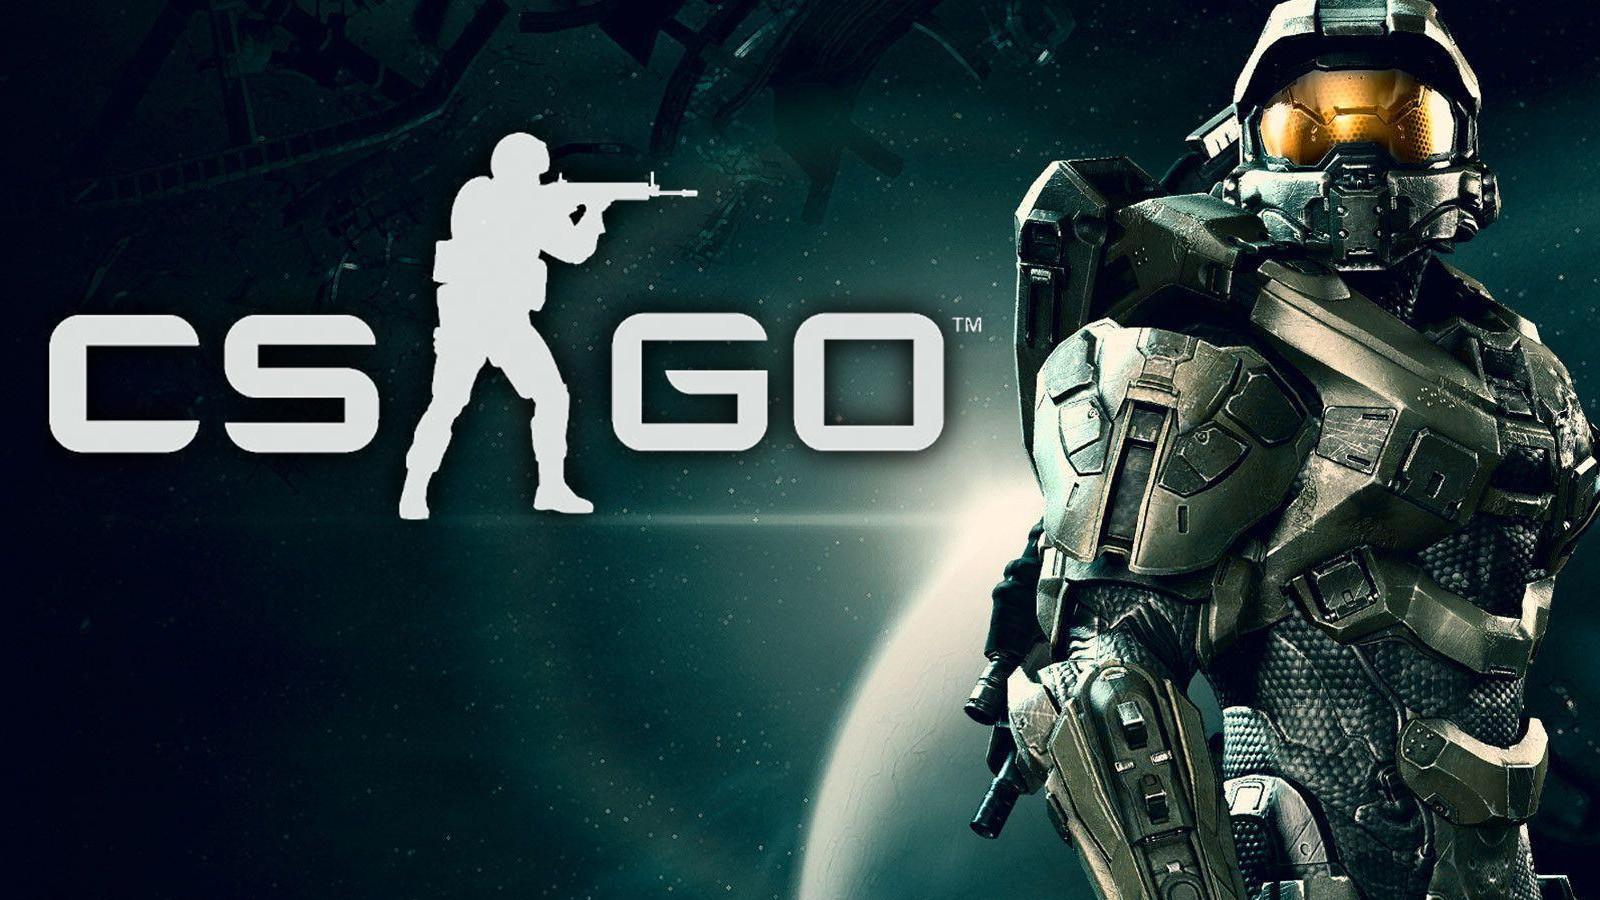 Halo 4 on Steam